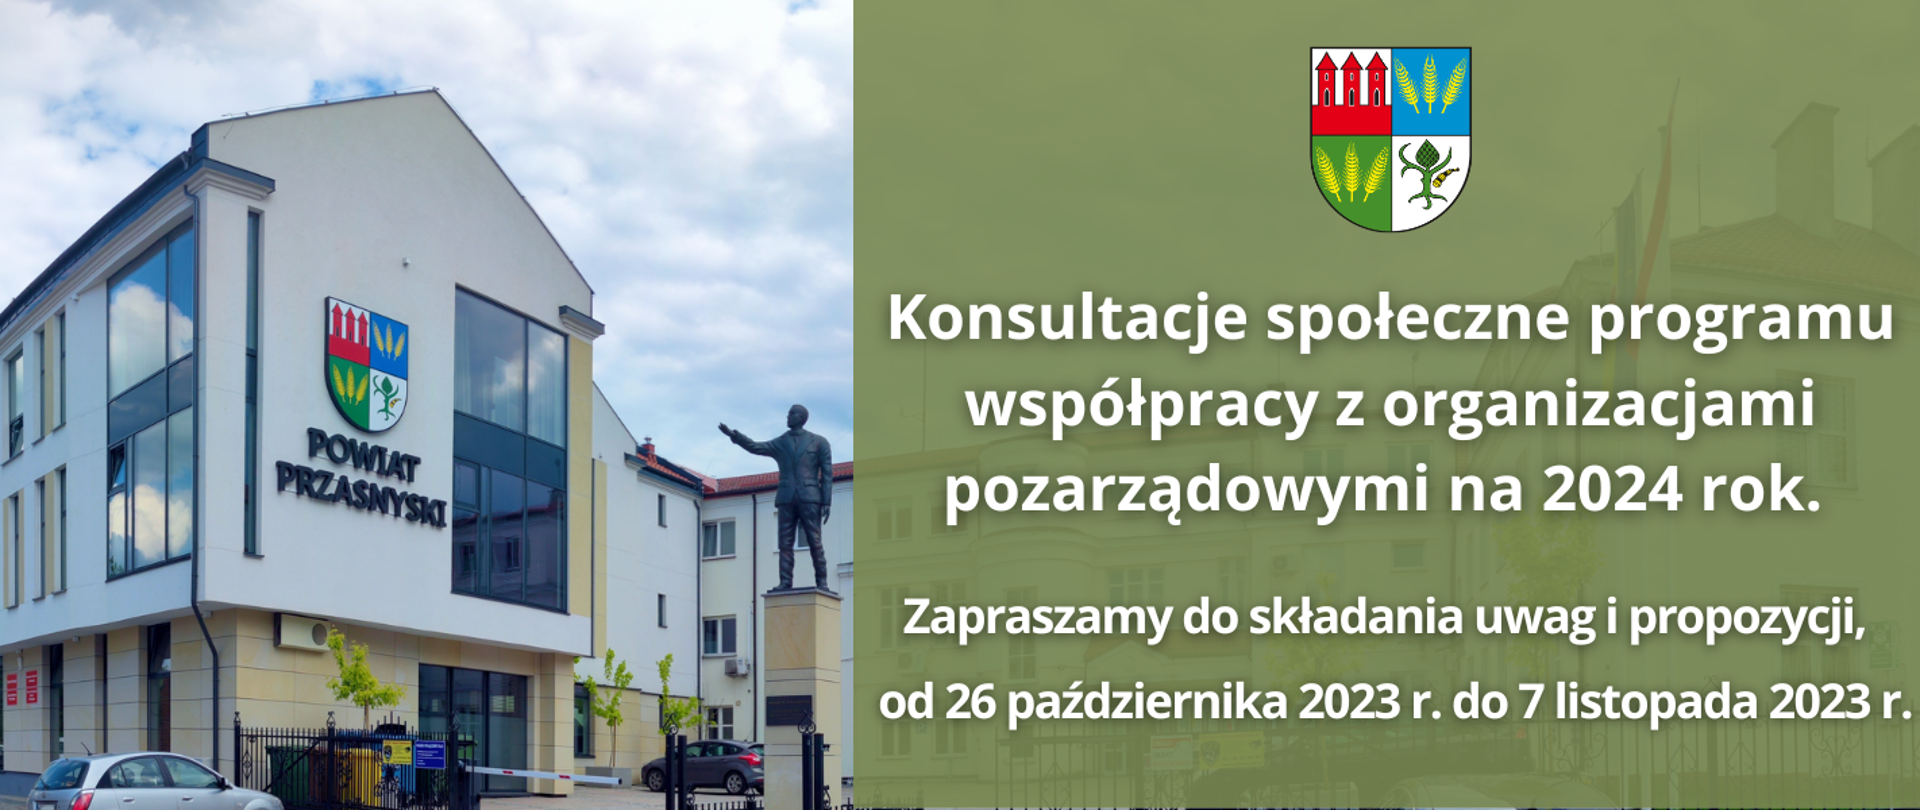 Grafika informuje o rozpoczęciu konsultacji w sprawie współpracy Powiatu Przasnyskiego z organizacjami pozarządowymi na 2024 rok. Treść w artykule.